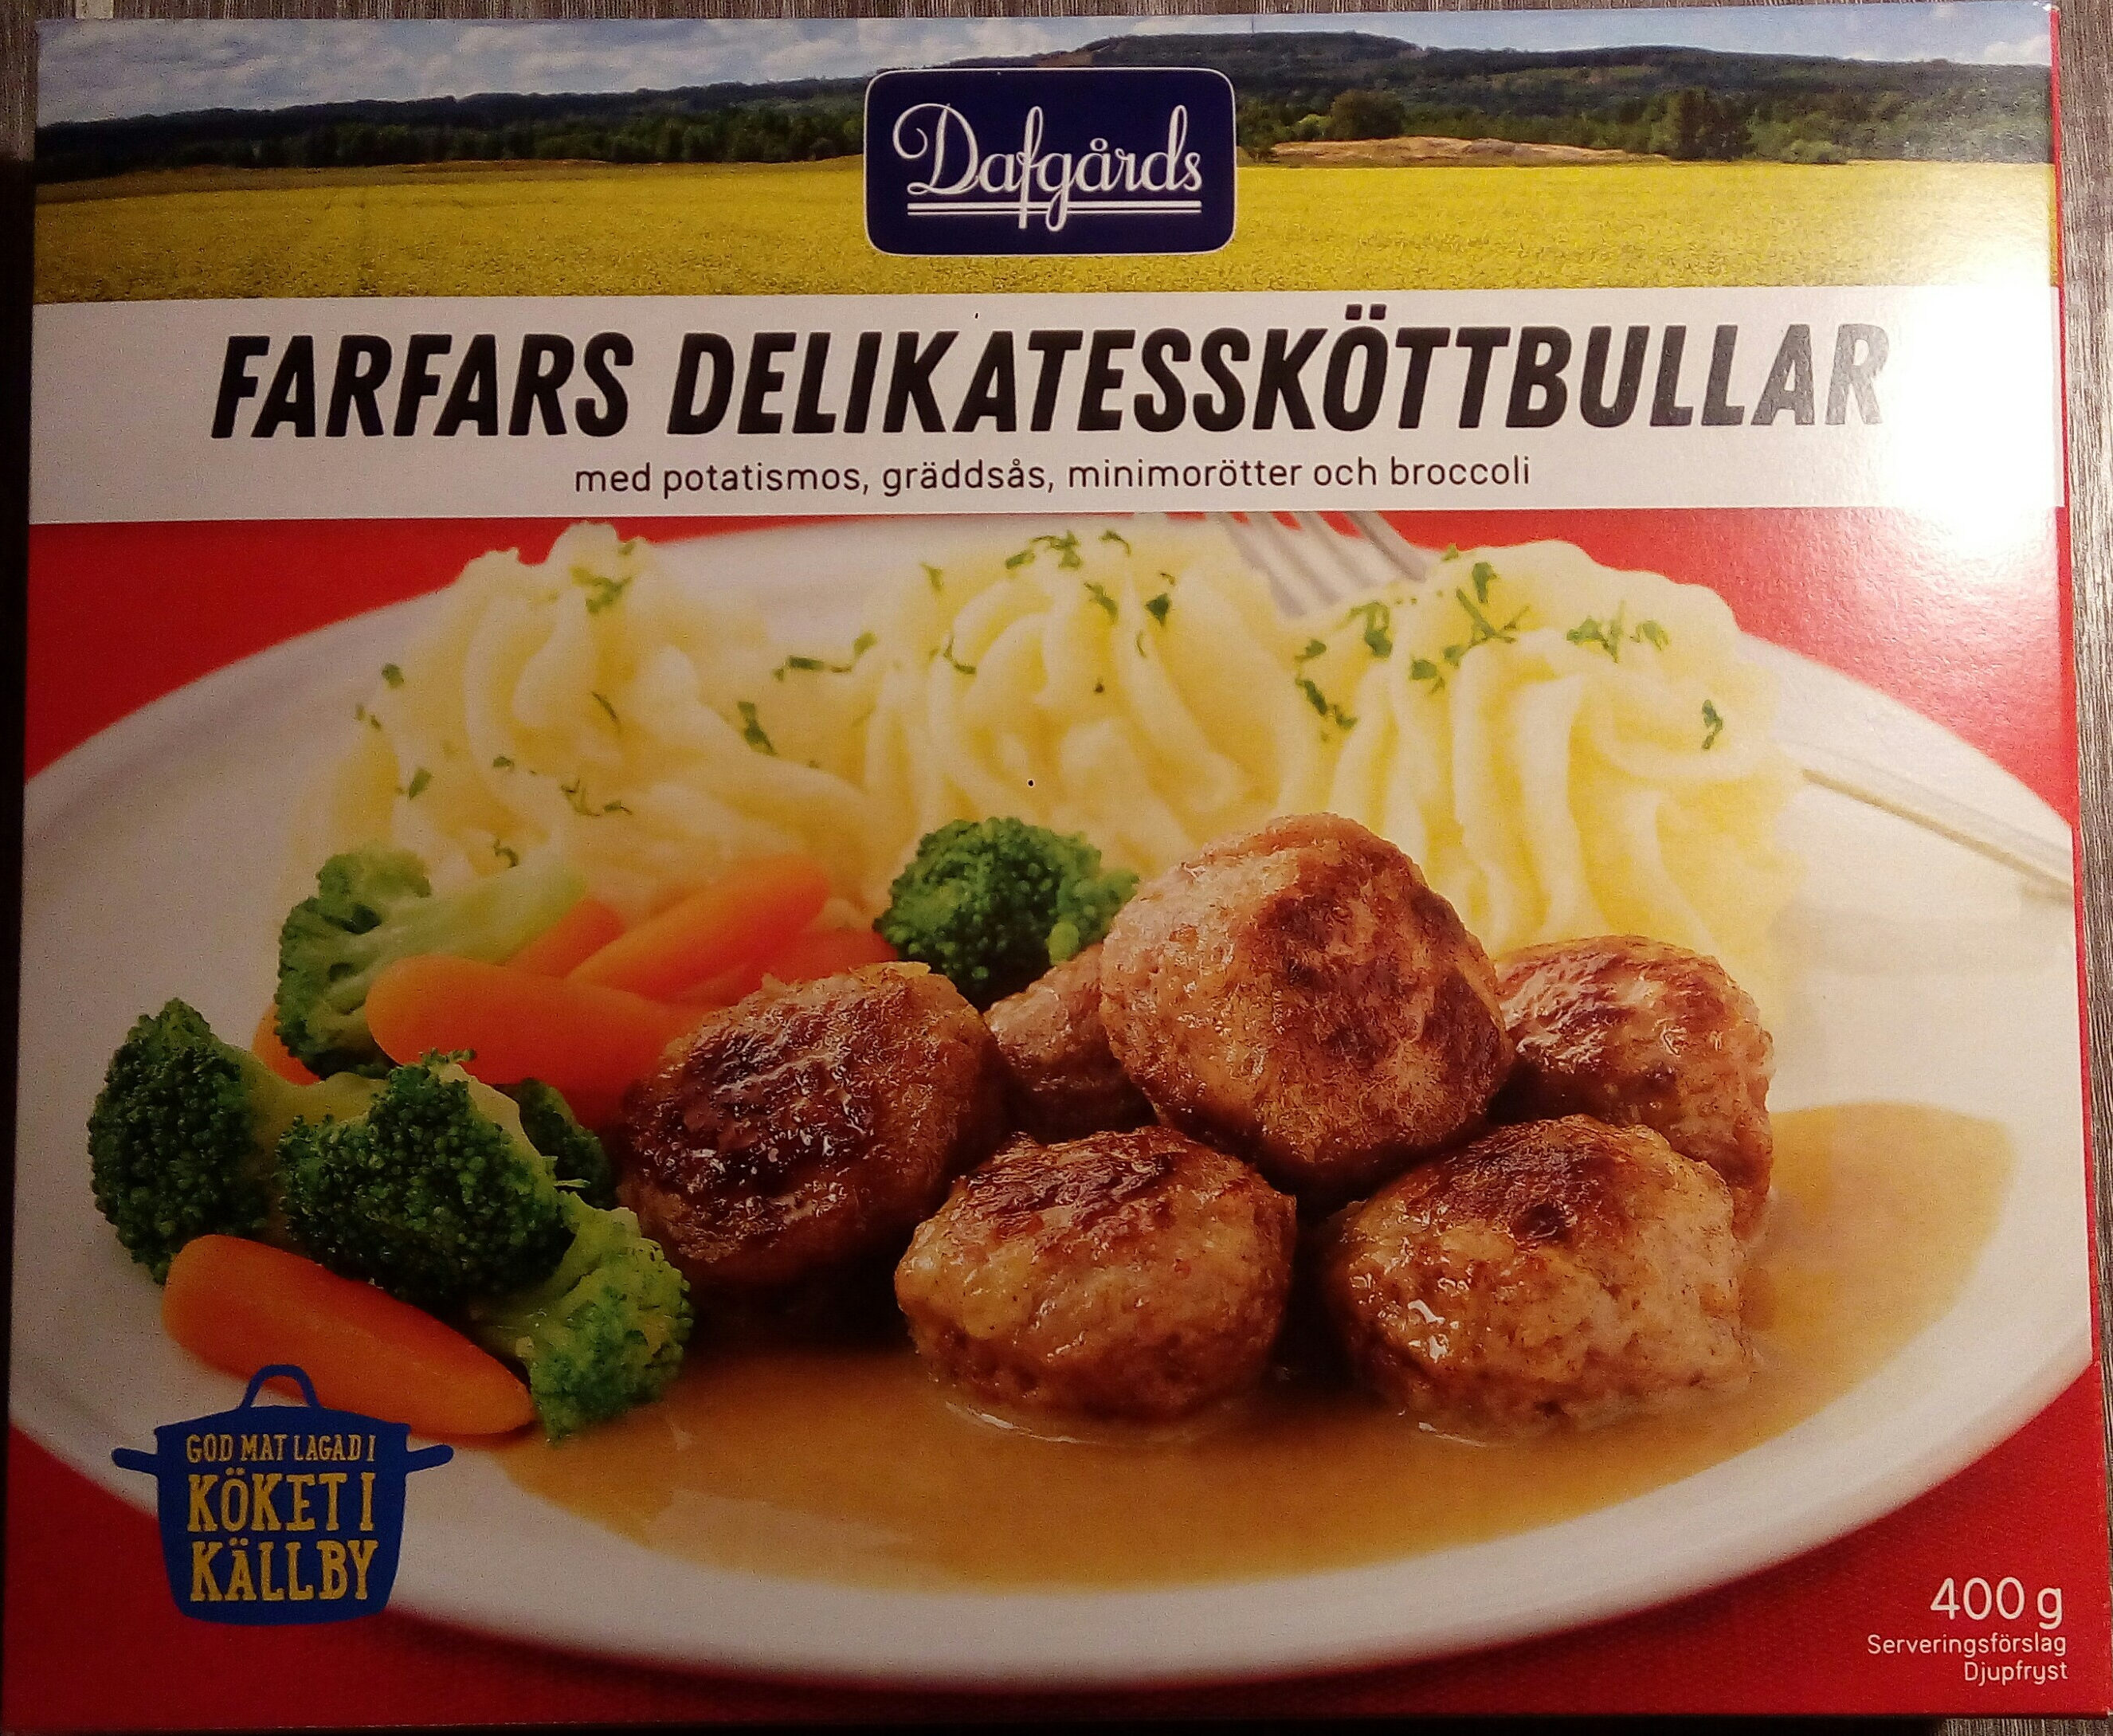 Dafgårds Farfars Delikatessköttbullar - Produkt - sv